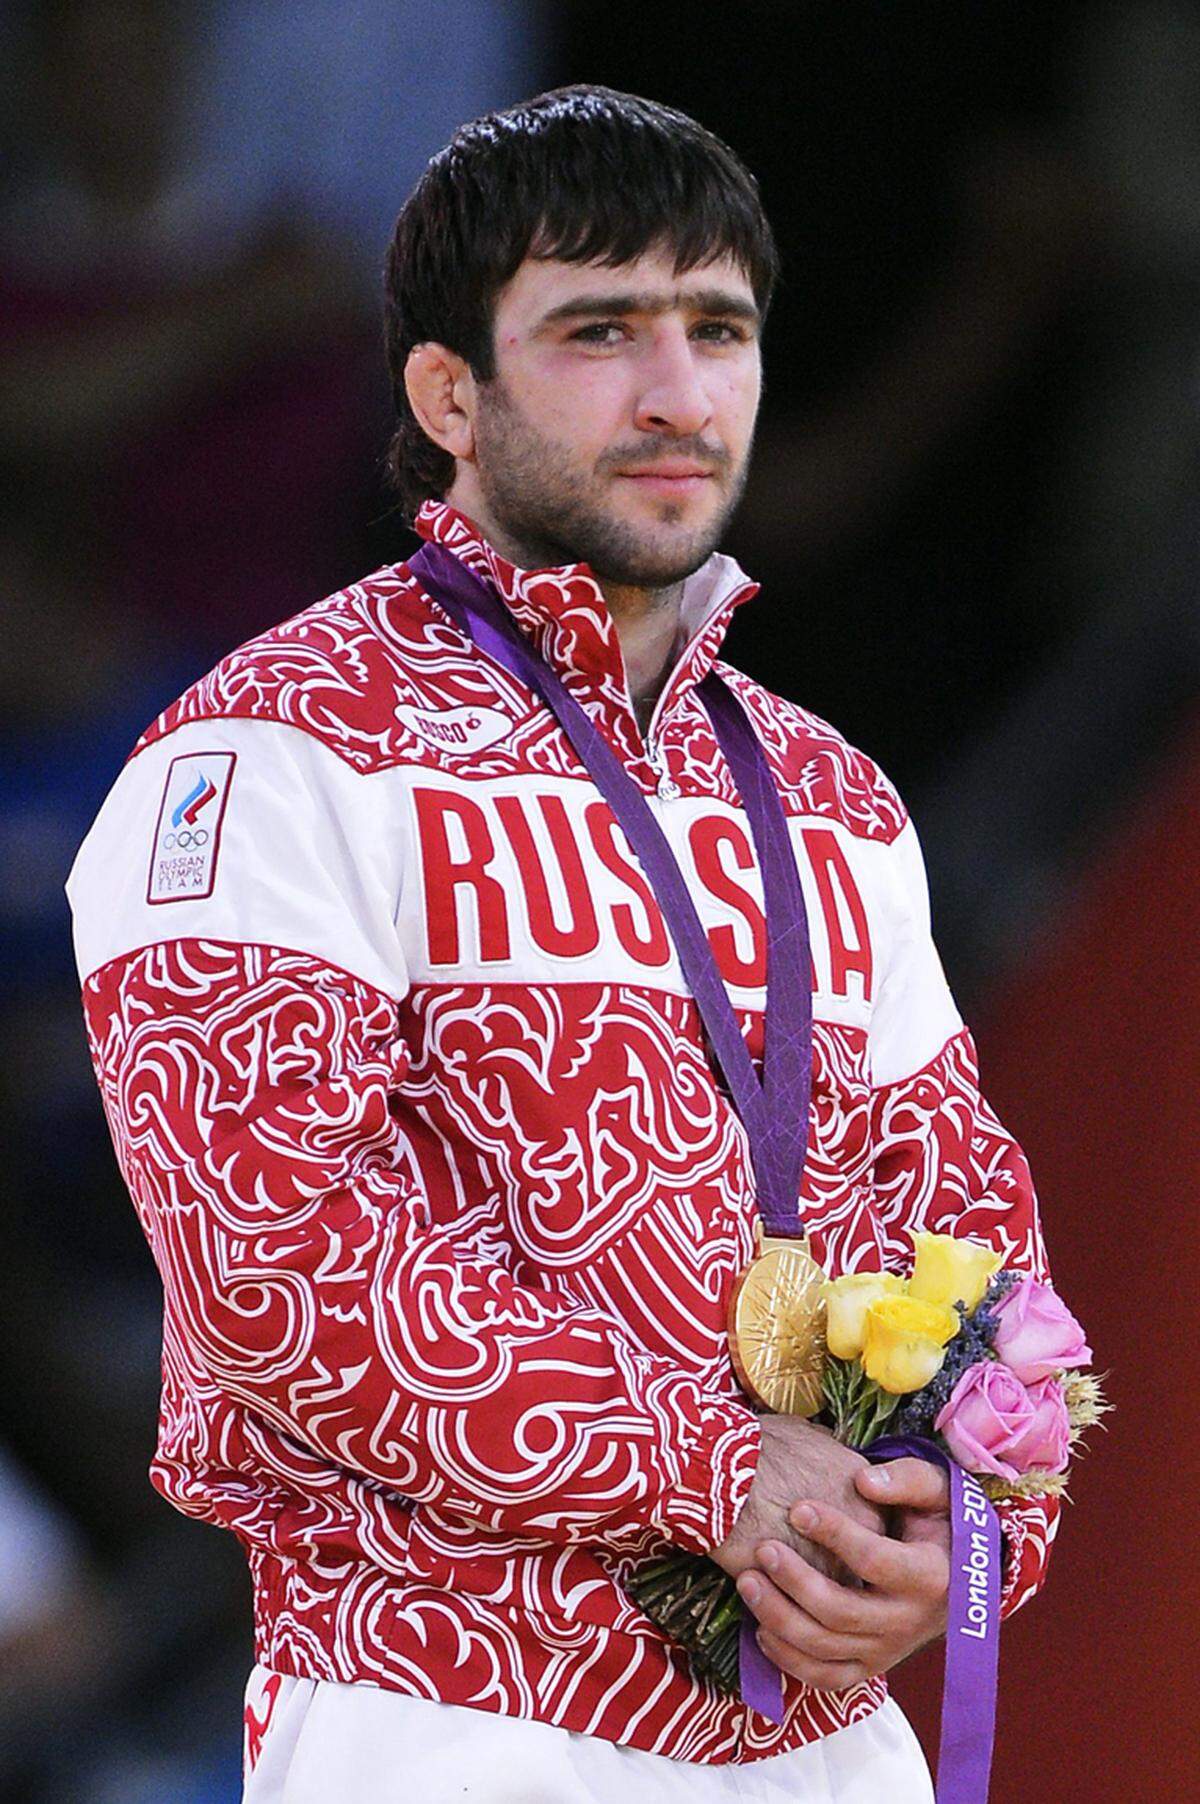 In eine ähnliche Kerbe schlagen die weiß-roten Anzüge der Russen, hier vorgeführt von dem russischen Judoka Mansur Isaev.